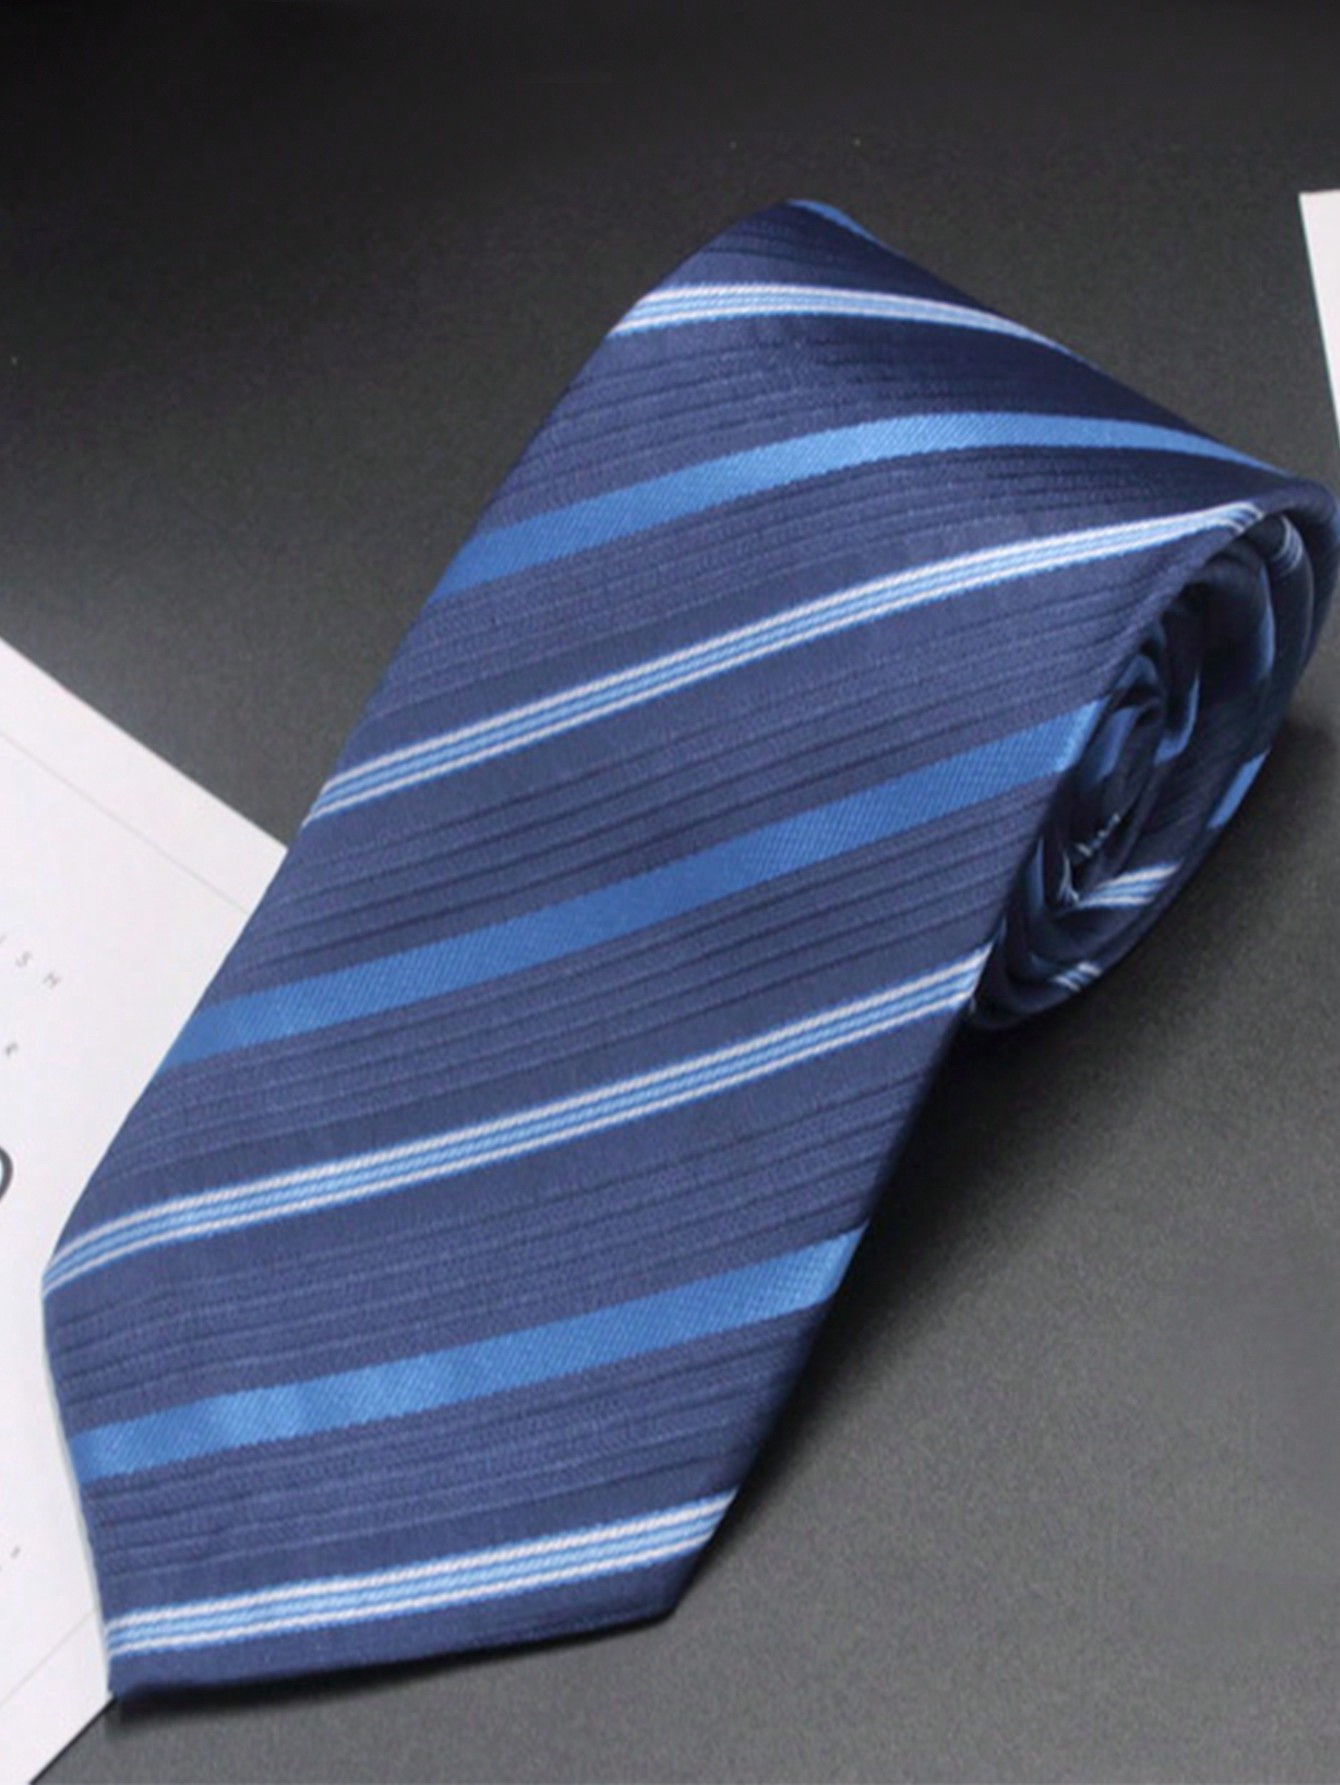 мужской галстук тонкий галстук в полоску для мужчин деловой свадебный жаккардовый галстук мужской галстук бабочка для платья рубашки п 1 шт. Мужской деловой галстук, синий